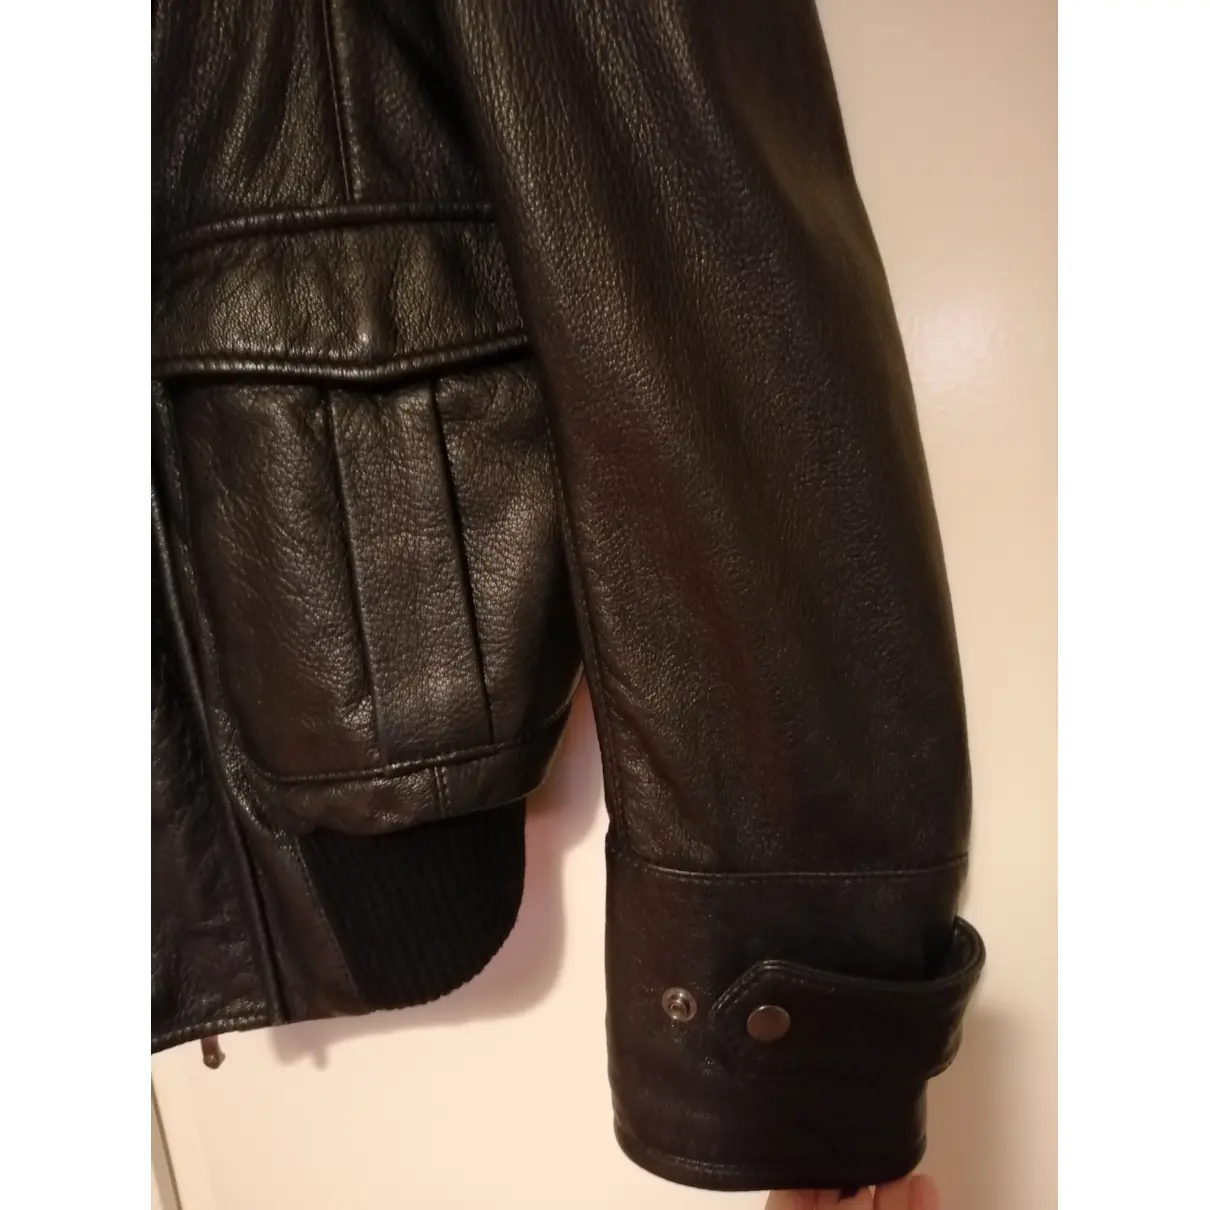 Leather jacket Trussardi